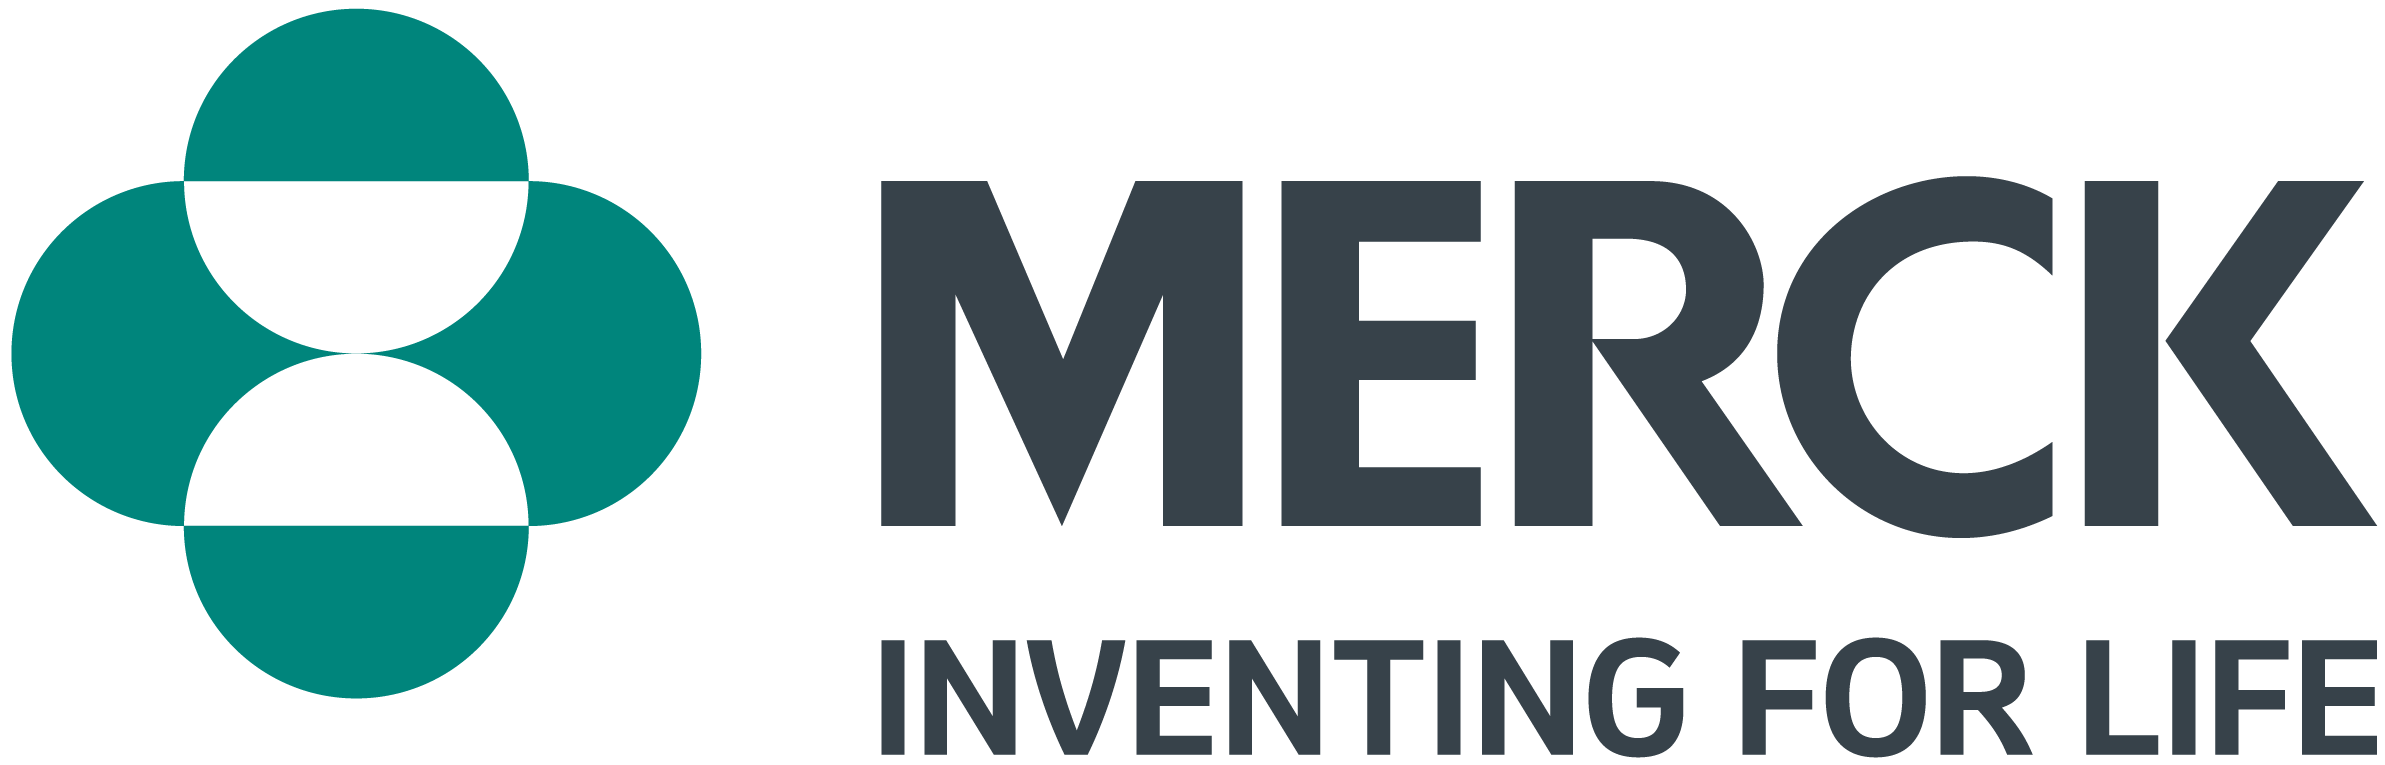 merck - logo